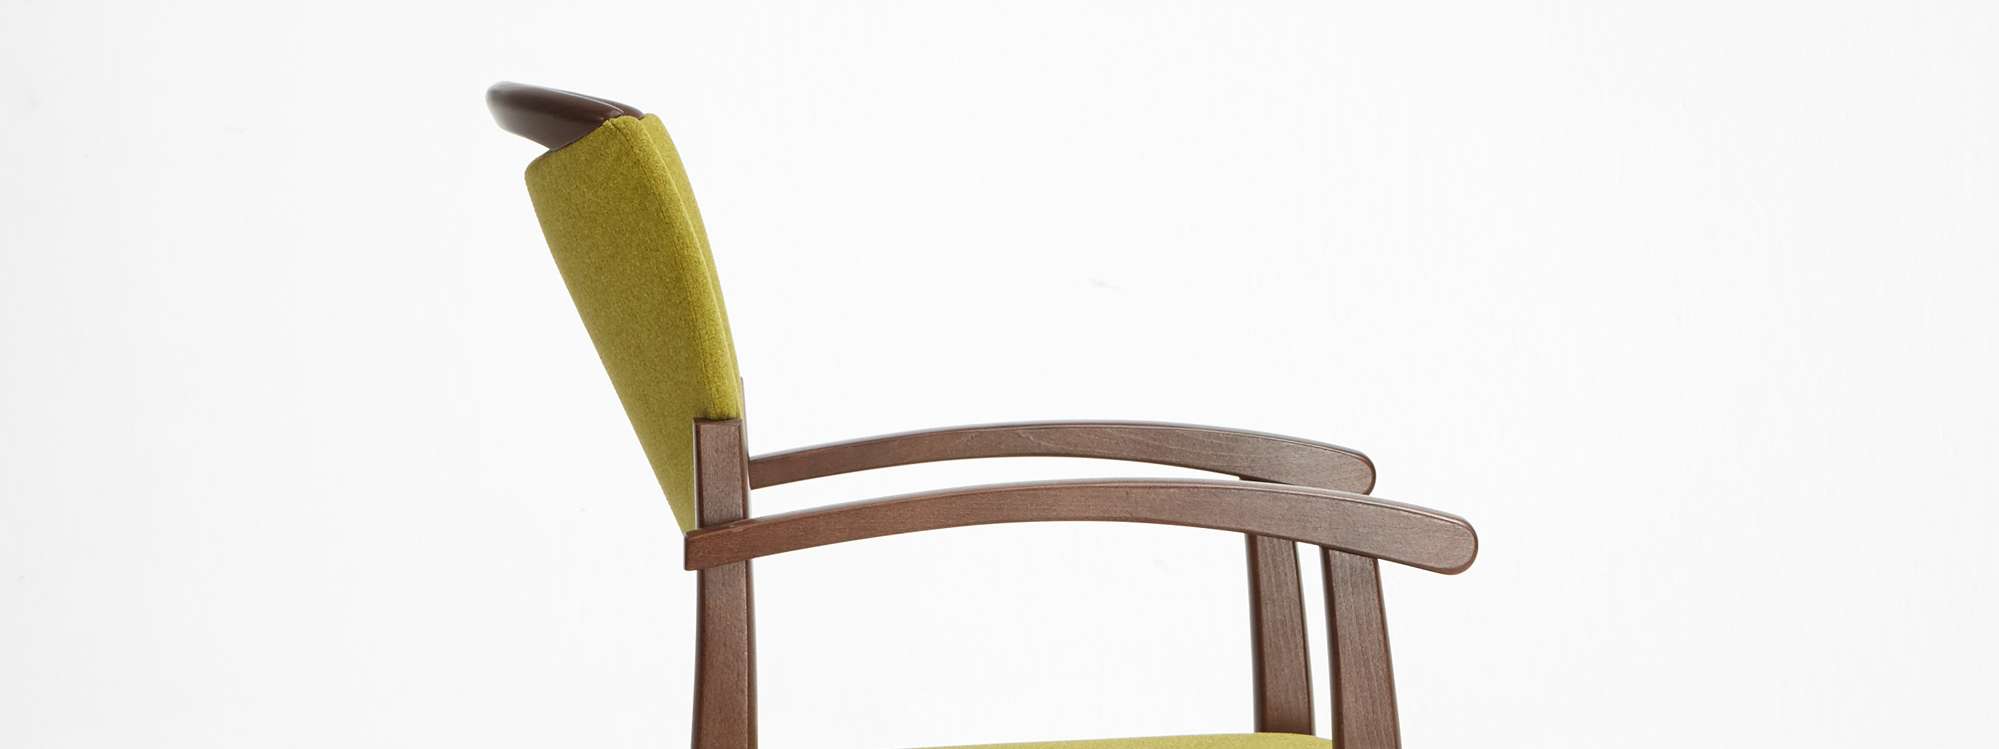 Model Fena jako krzesło sztaplowane, z podłokietnikami i uchwytem